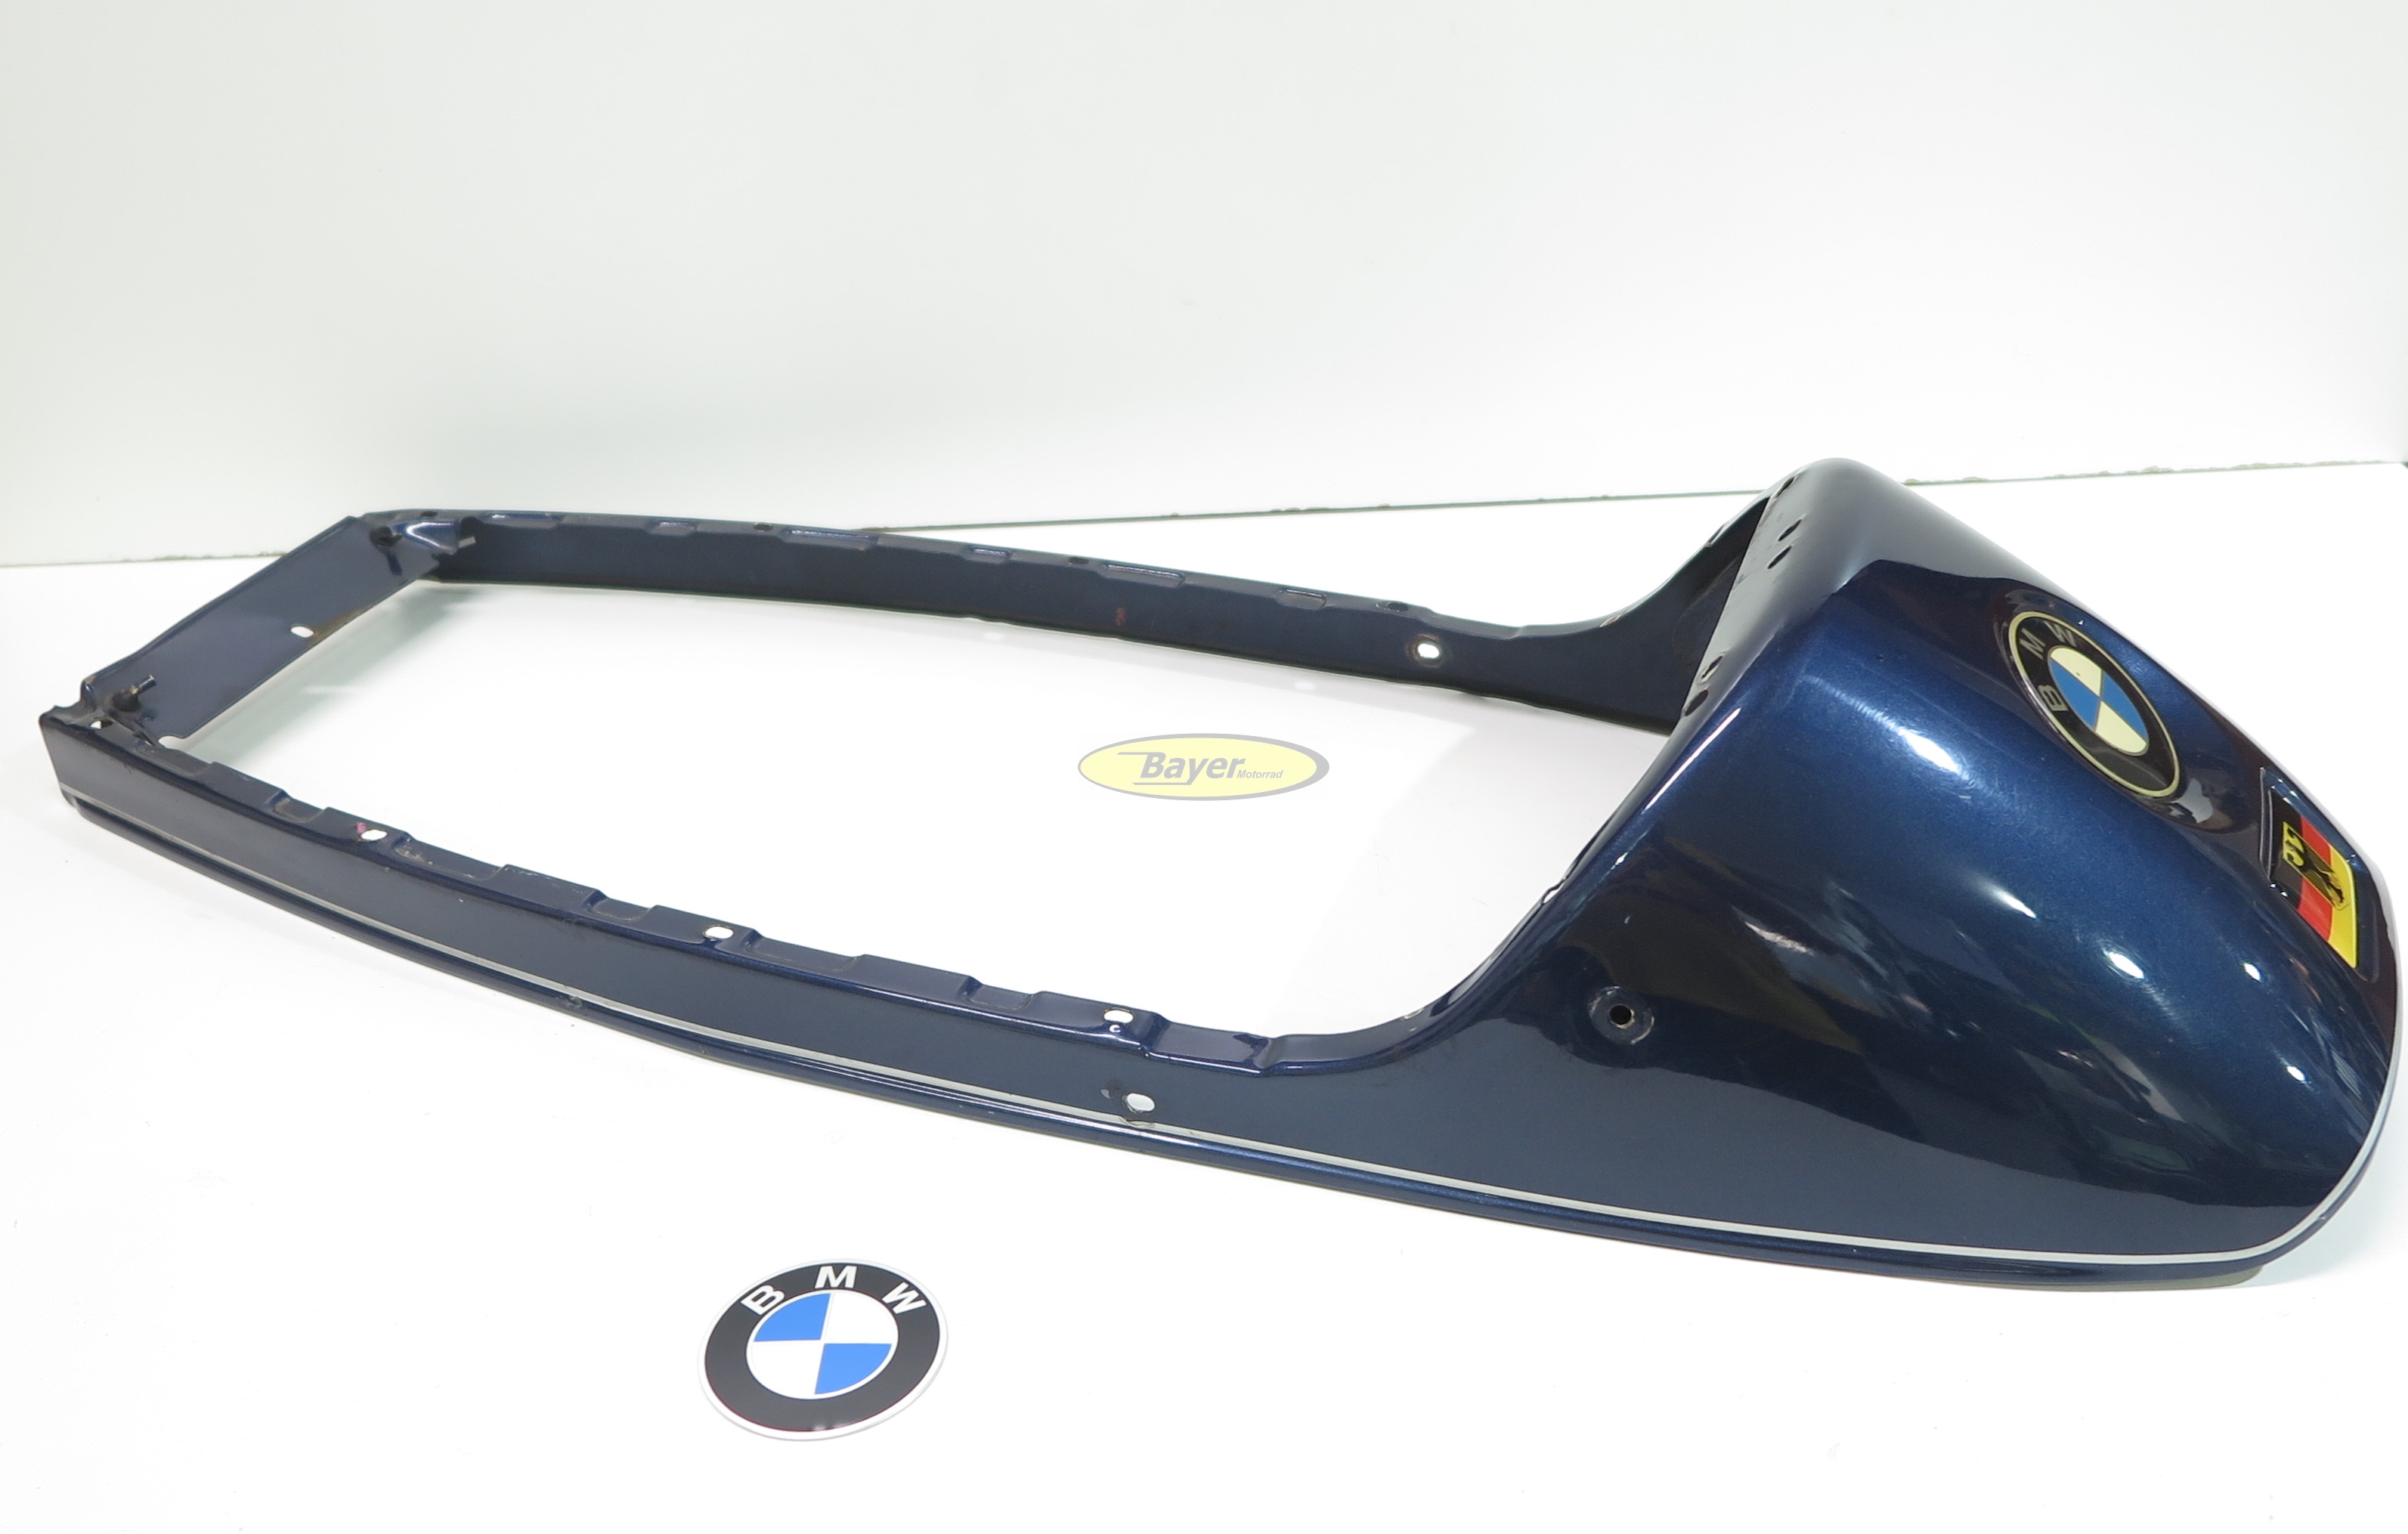 Cadre de siège BMW, occasion, peinture 544 Pacific blue, modèles BMW R2V  Boxer